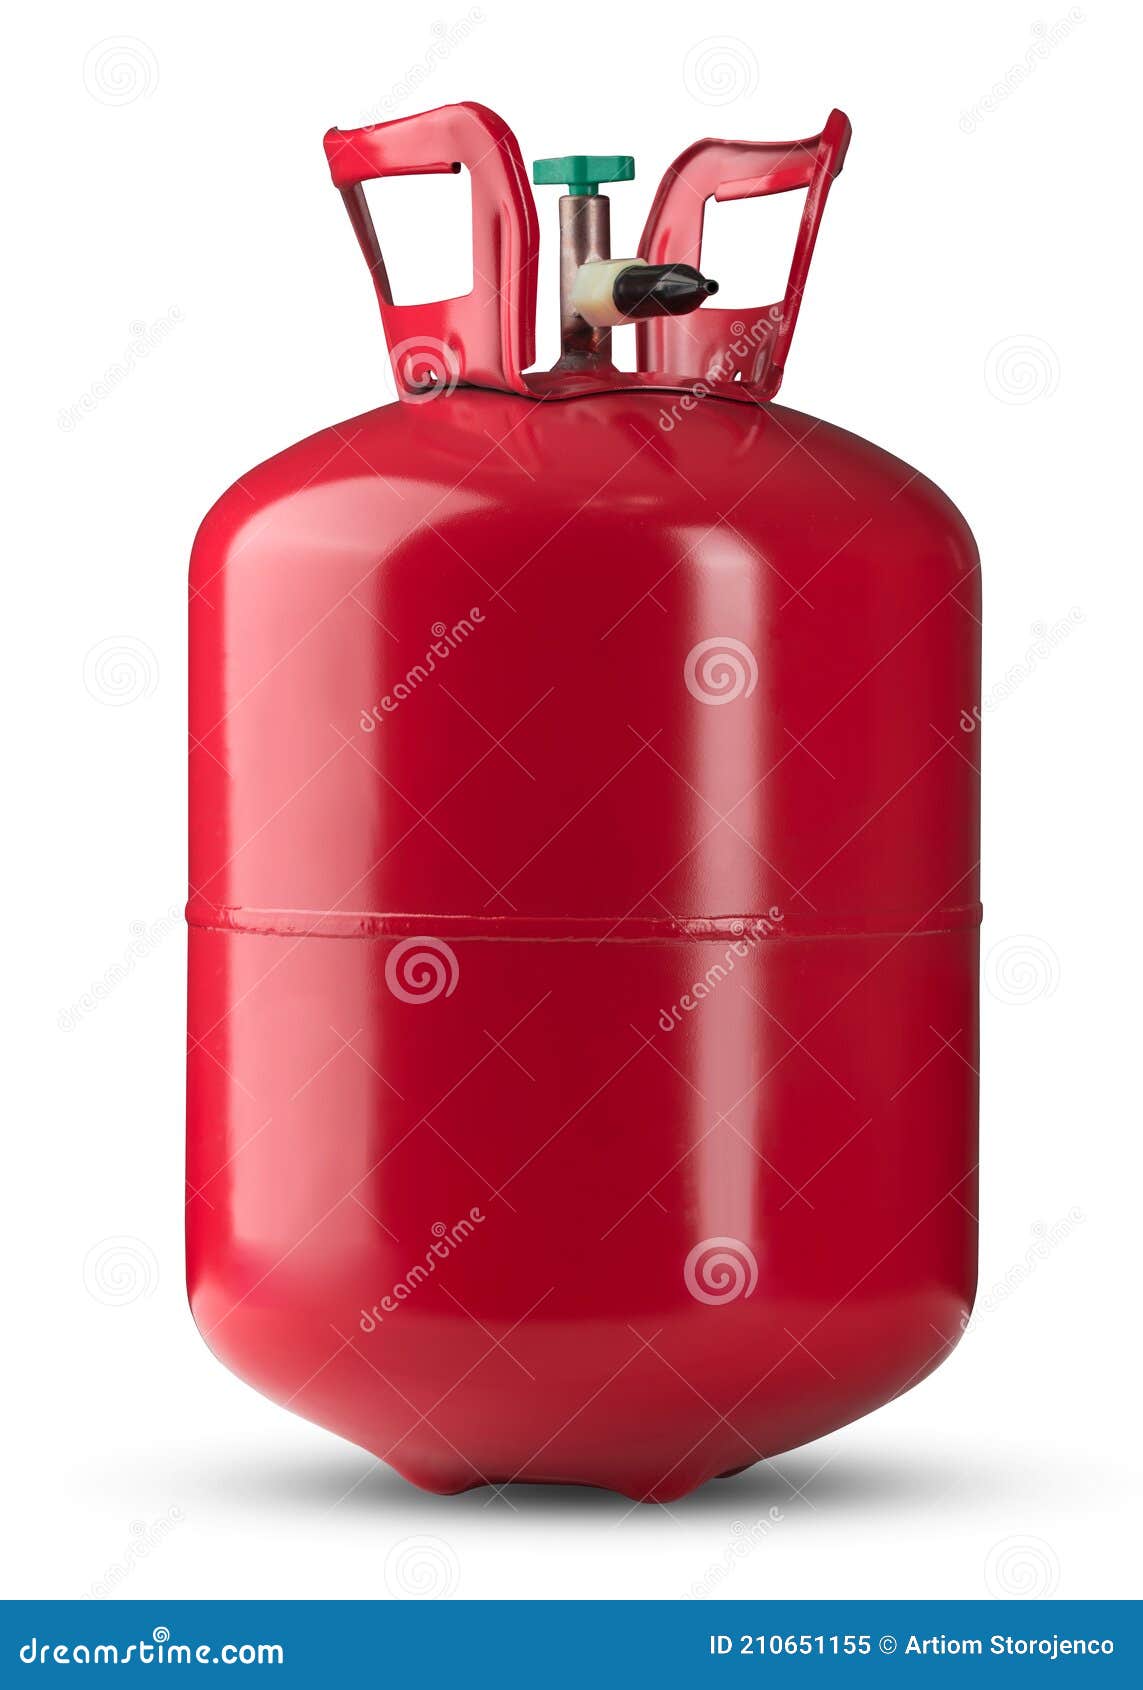 Heliumtank. Vloeistofreservoirs Voor Heliumgas Voor Vullen of Opblazen Van Ballonnen Die Geschikt Zijn V Stock Afbeelding - of vloeibaar, goed: 210651155